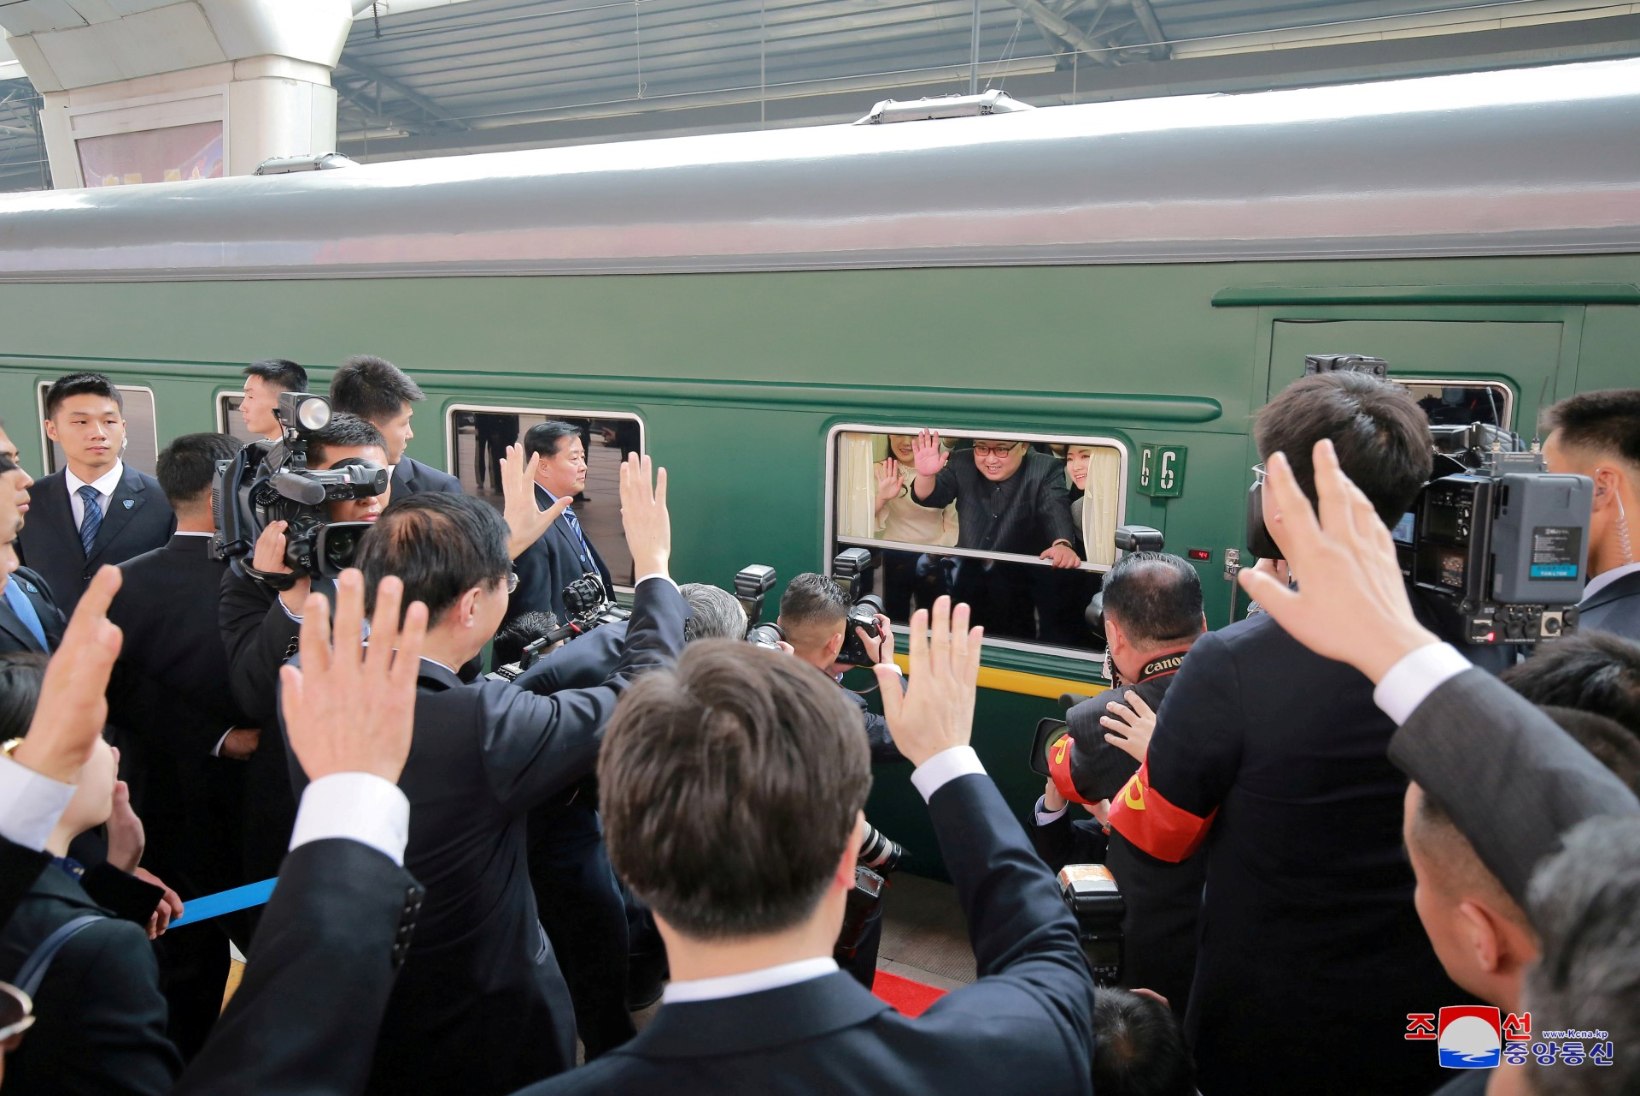  VIDEO ja FOTOD | Vaata, millise "luksuse" keskel Kim Jong-un Hiinasse reisis